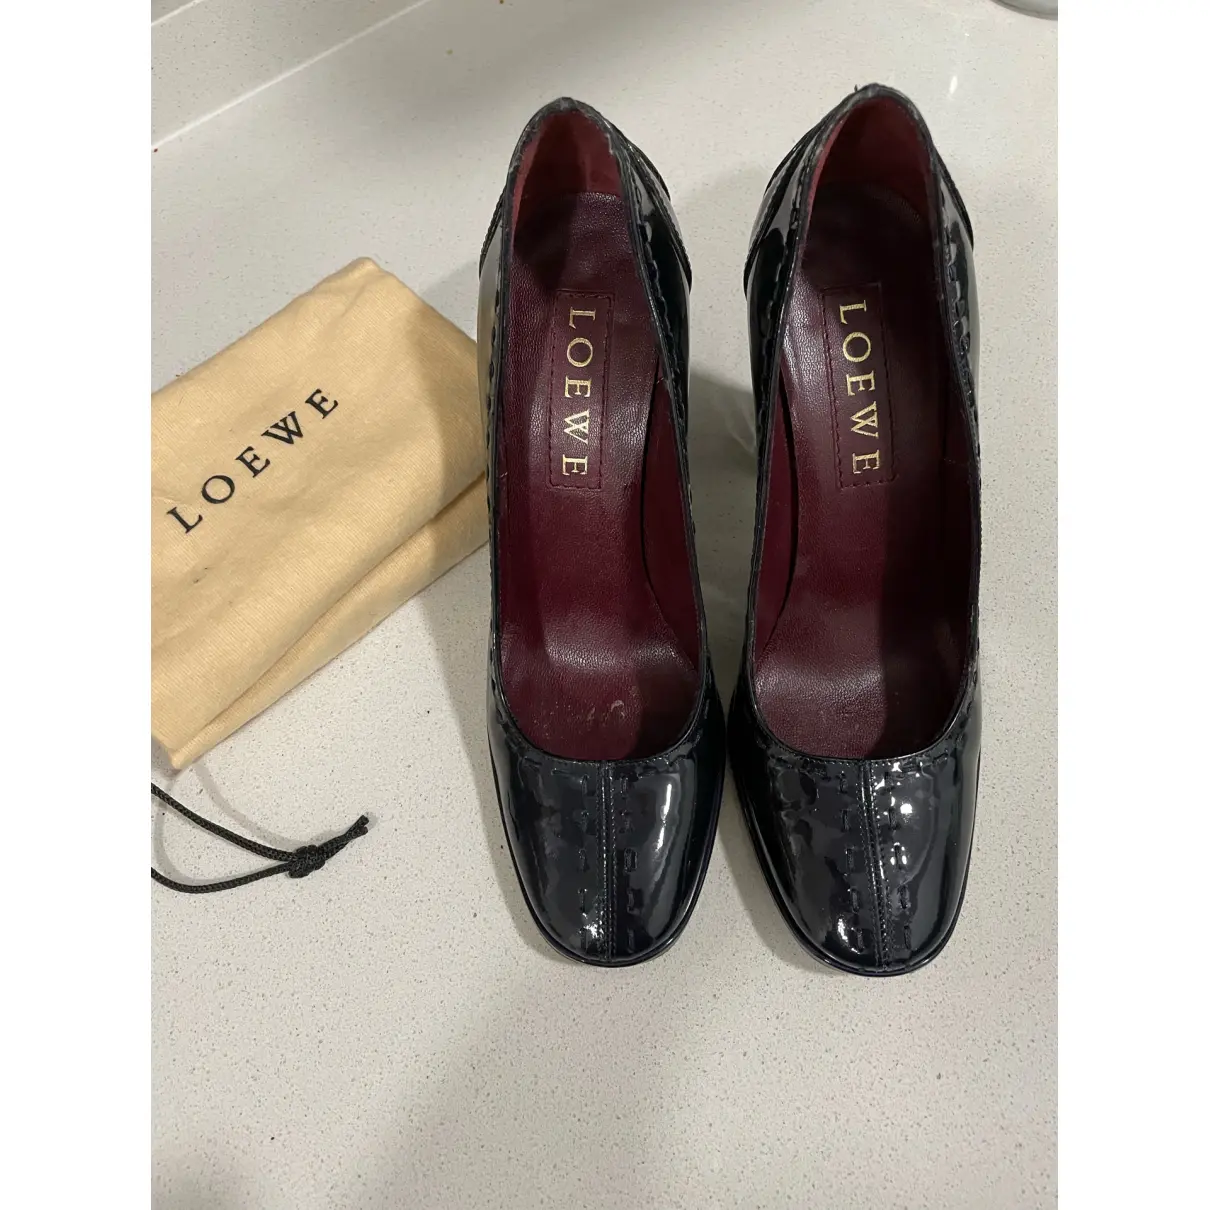 Buy Loewe Patent leather heels online